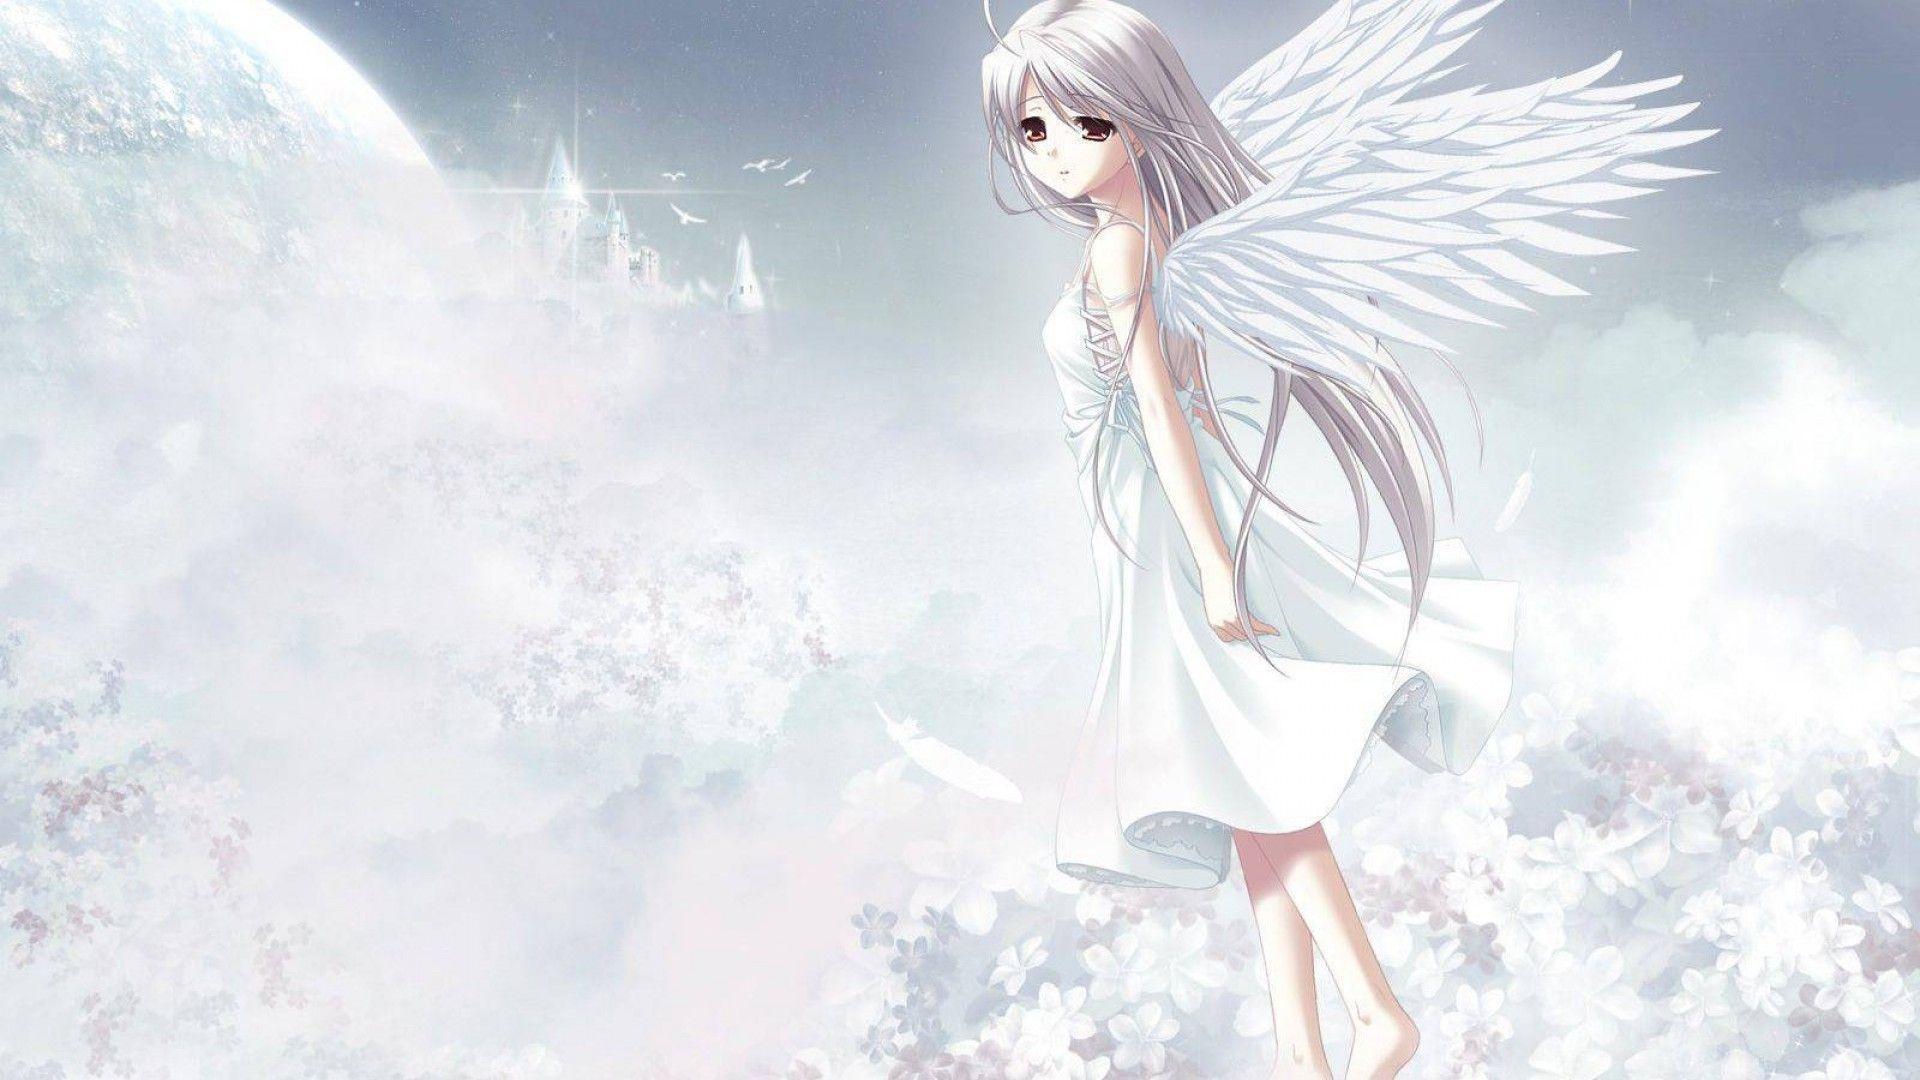 Angel Beats Tachibana Kanade Anime girls White hair Wings Orange eyes  HD Wallpapers  Desktop and Mobile Images  Photos